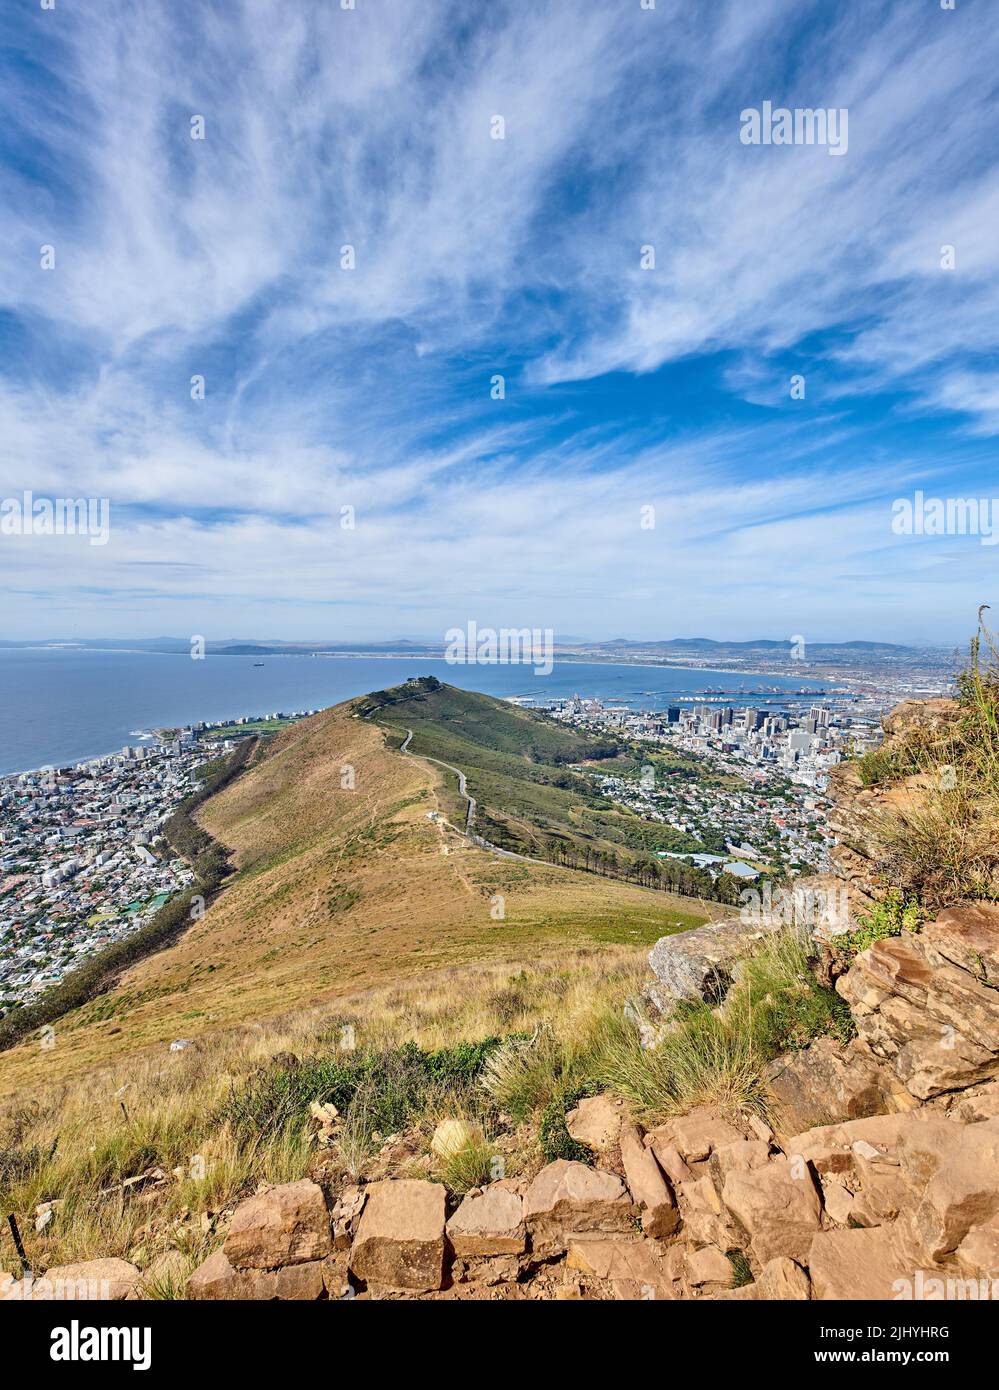 Felsiger Berg mit Blick auf eine Küstenstadt am Meer in Kapstadt. Landschaft von grünen Hügel mit Steinen und Pflanzen umgeben von einer Stadt und Stockfoto